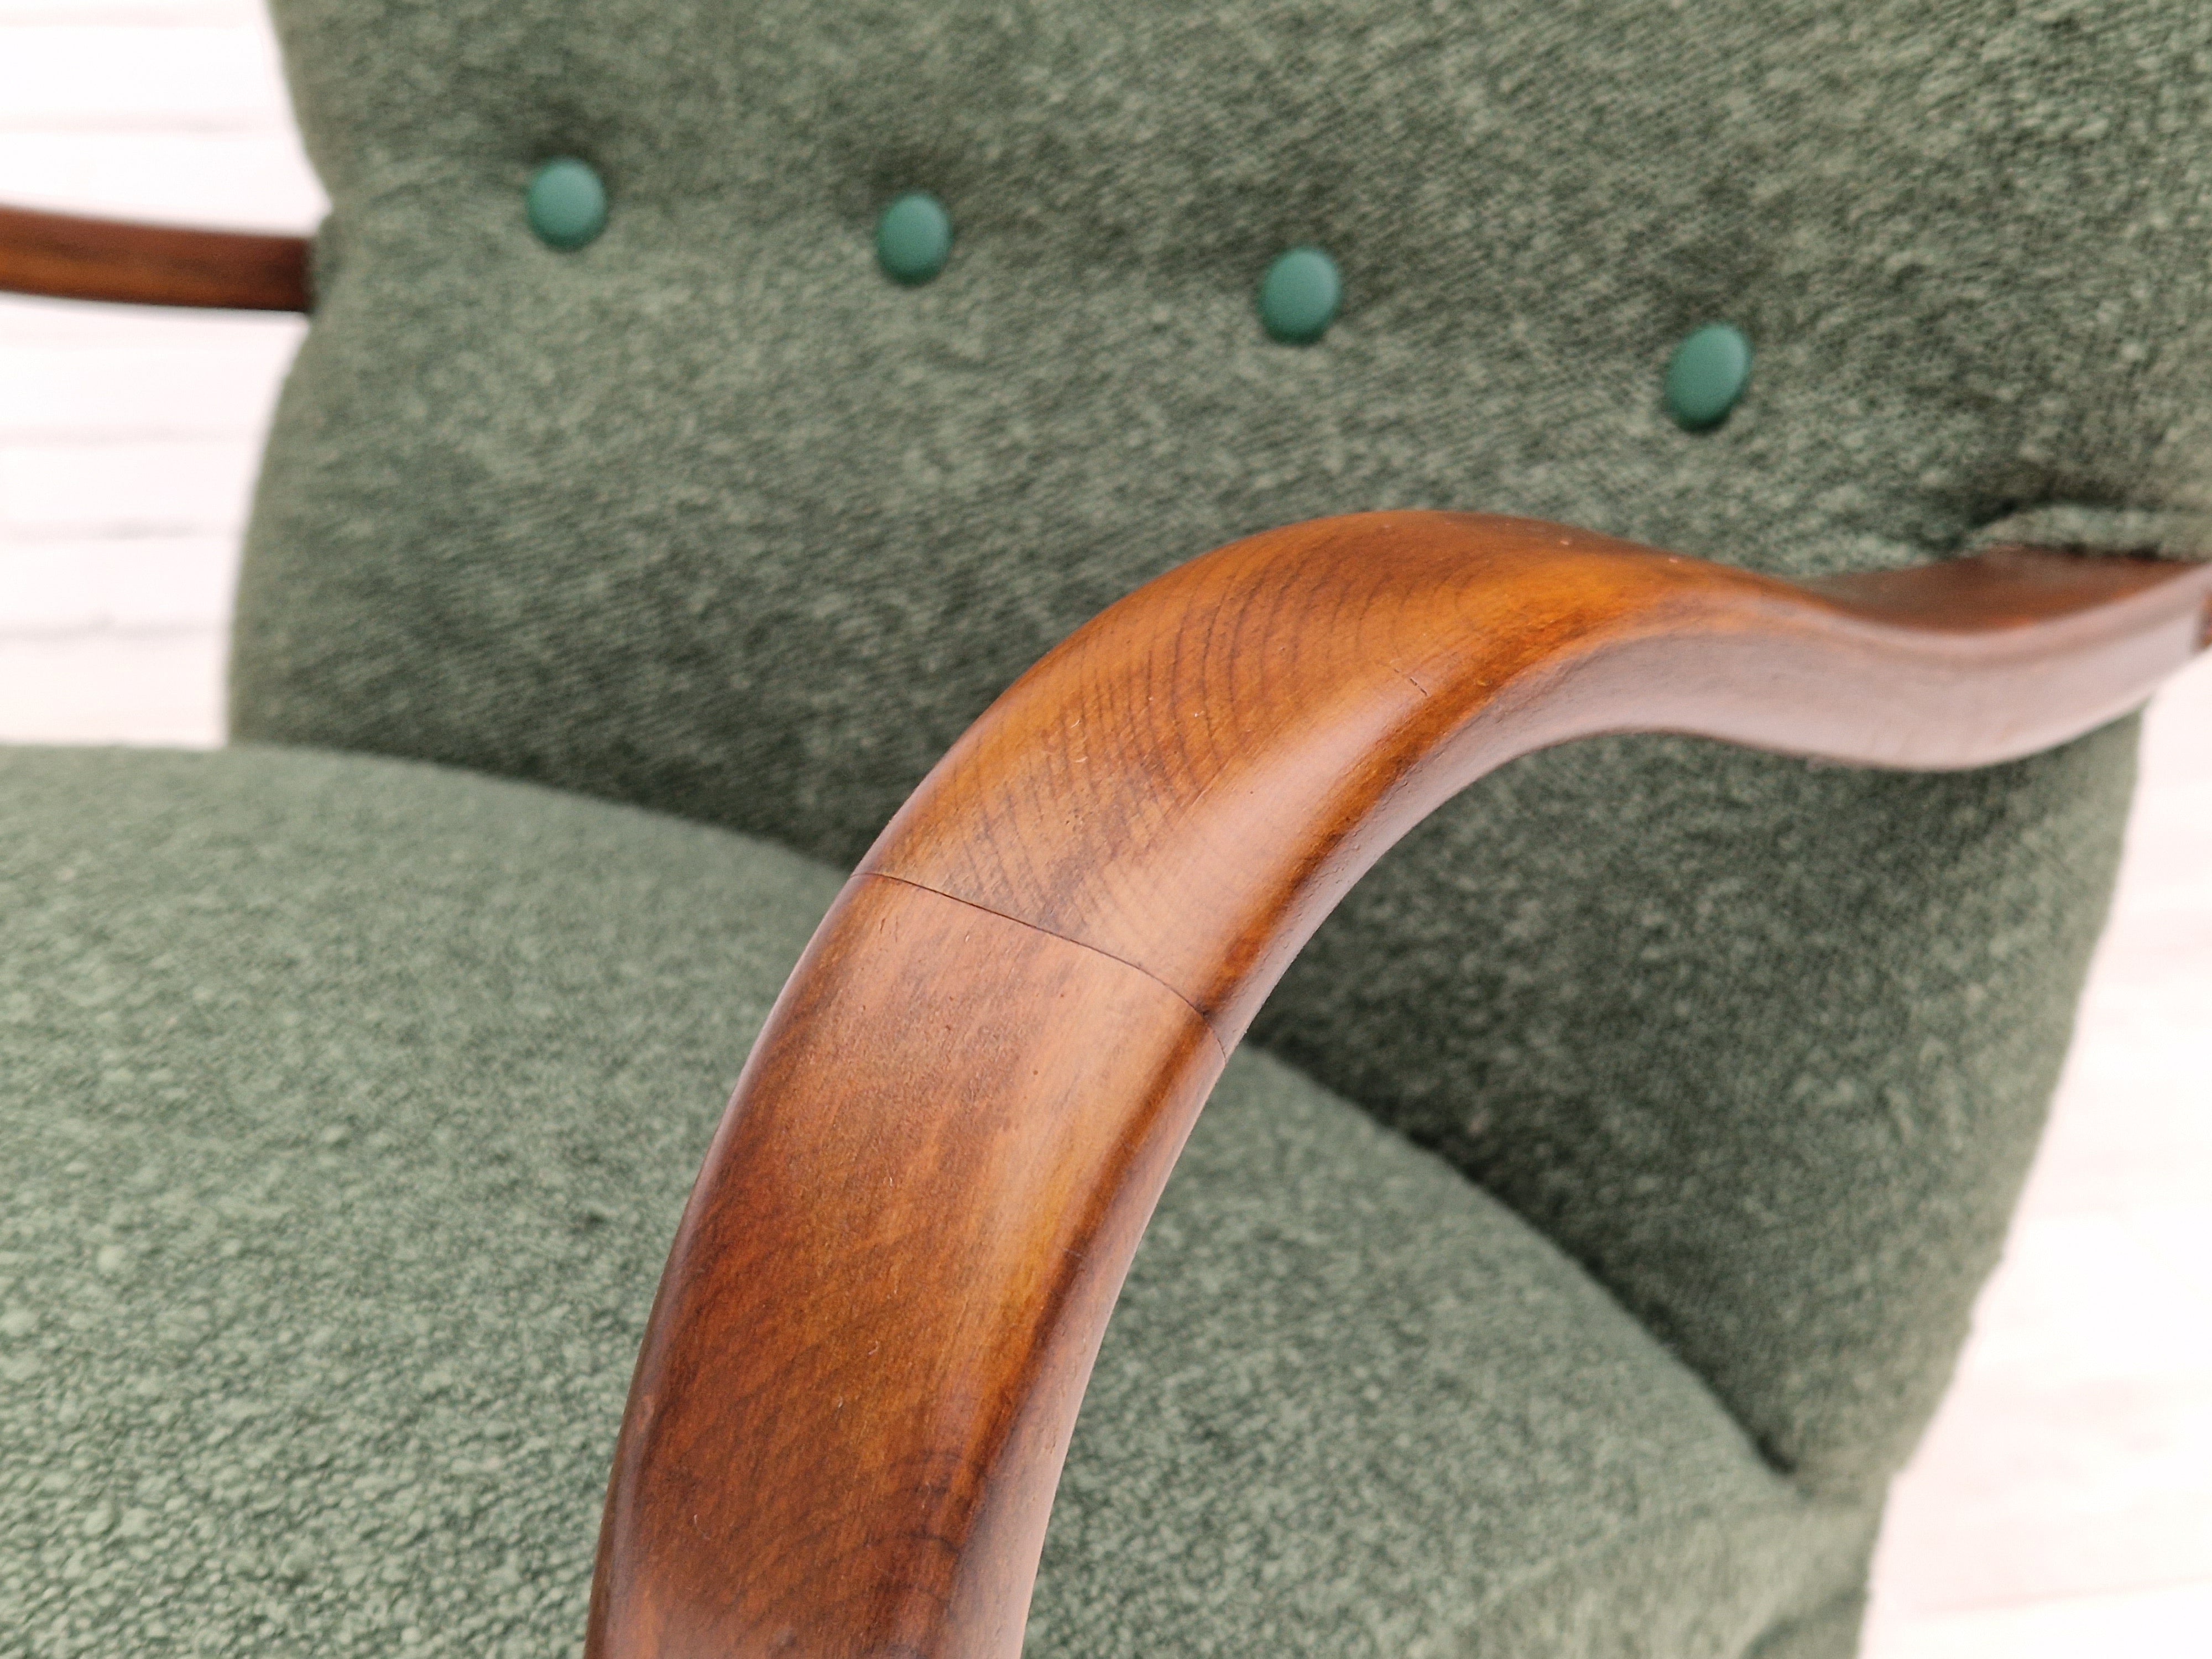 60erne, Dansk design, total renoveret lænestol, flaske grøn møbelstof.